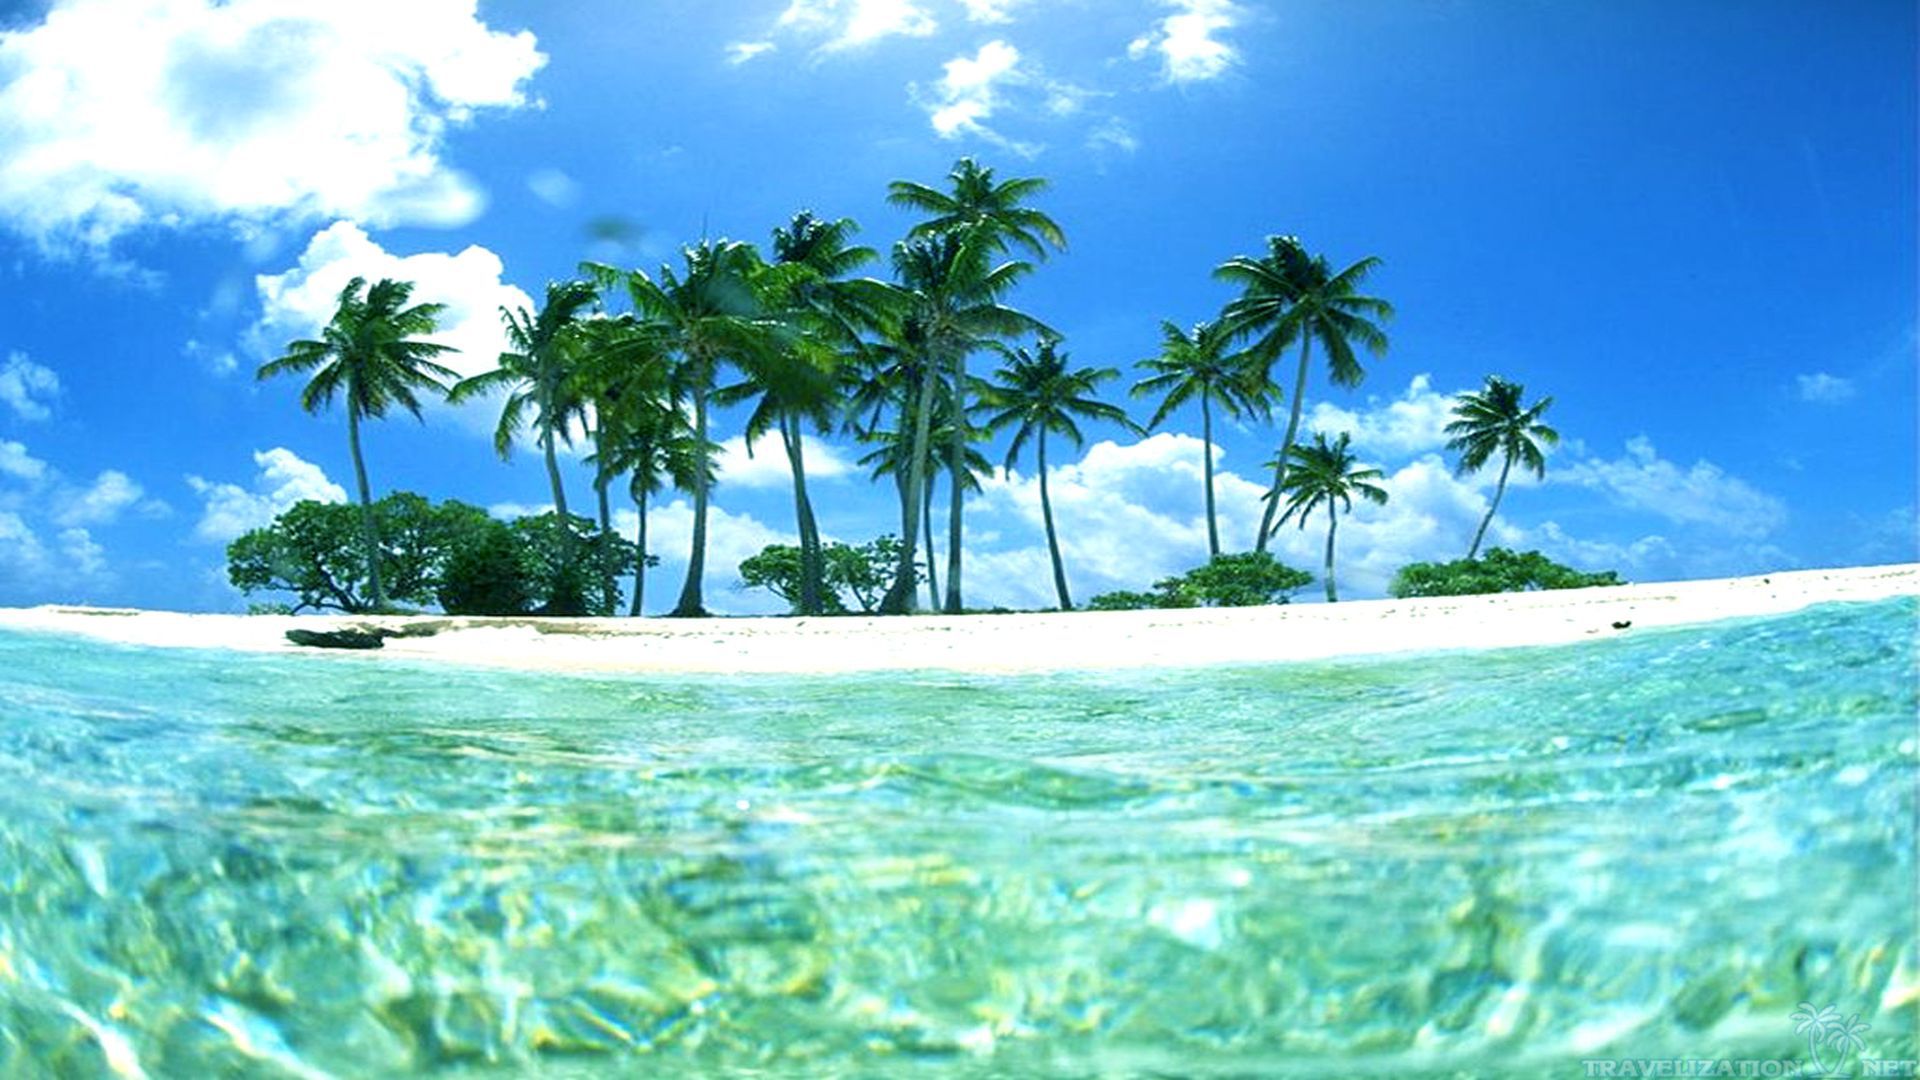 Bức ảnh nền hòa trộn giữa những hòn đảo nhiệt đới nổi tiếng với hình ảnh vườn cọ hay những bãi biển đầy nắng sẽ cho bạn một trải nghiệm đầy màu sắc. Đây thực sự là một lựa chọn tuyệt vời để giúp bạn thư giãn và bắt đầu một ngày mới tràn đầy năng lượng.